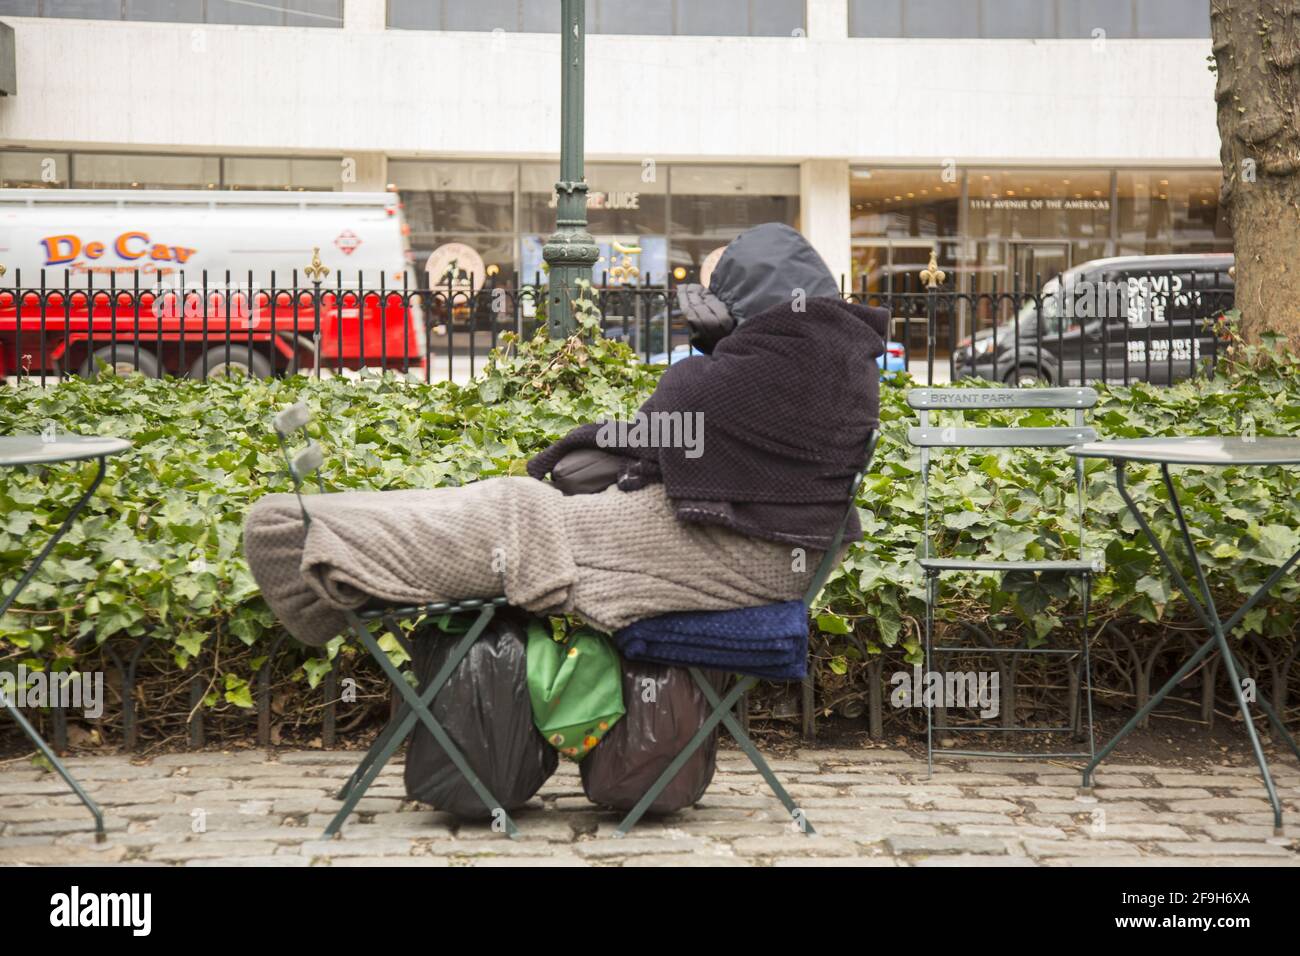 La personne sans domicile s'est enveloppée pour rester au chaud, dormant sur des chaises au Bryant Park le long de la 42e rue dans Midtown Manhattan, New York. Banque D'Images